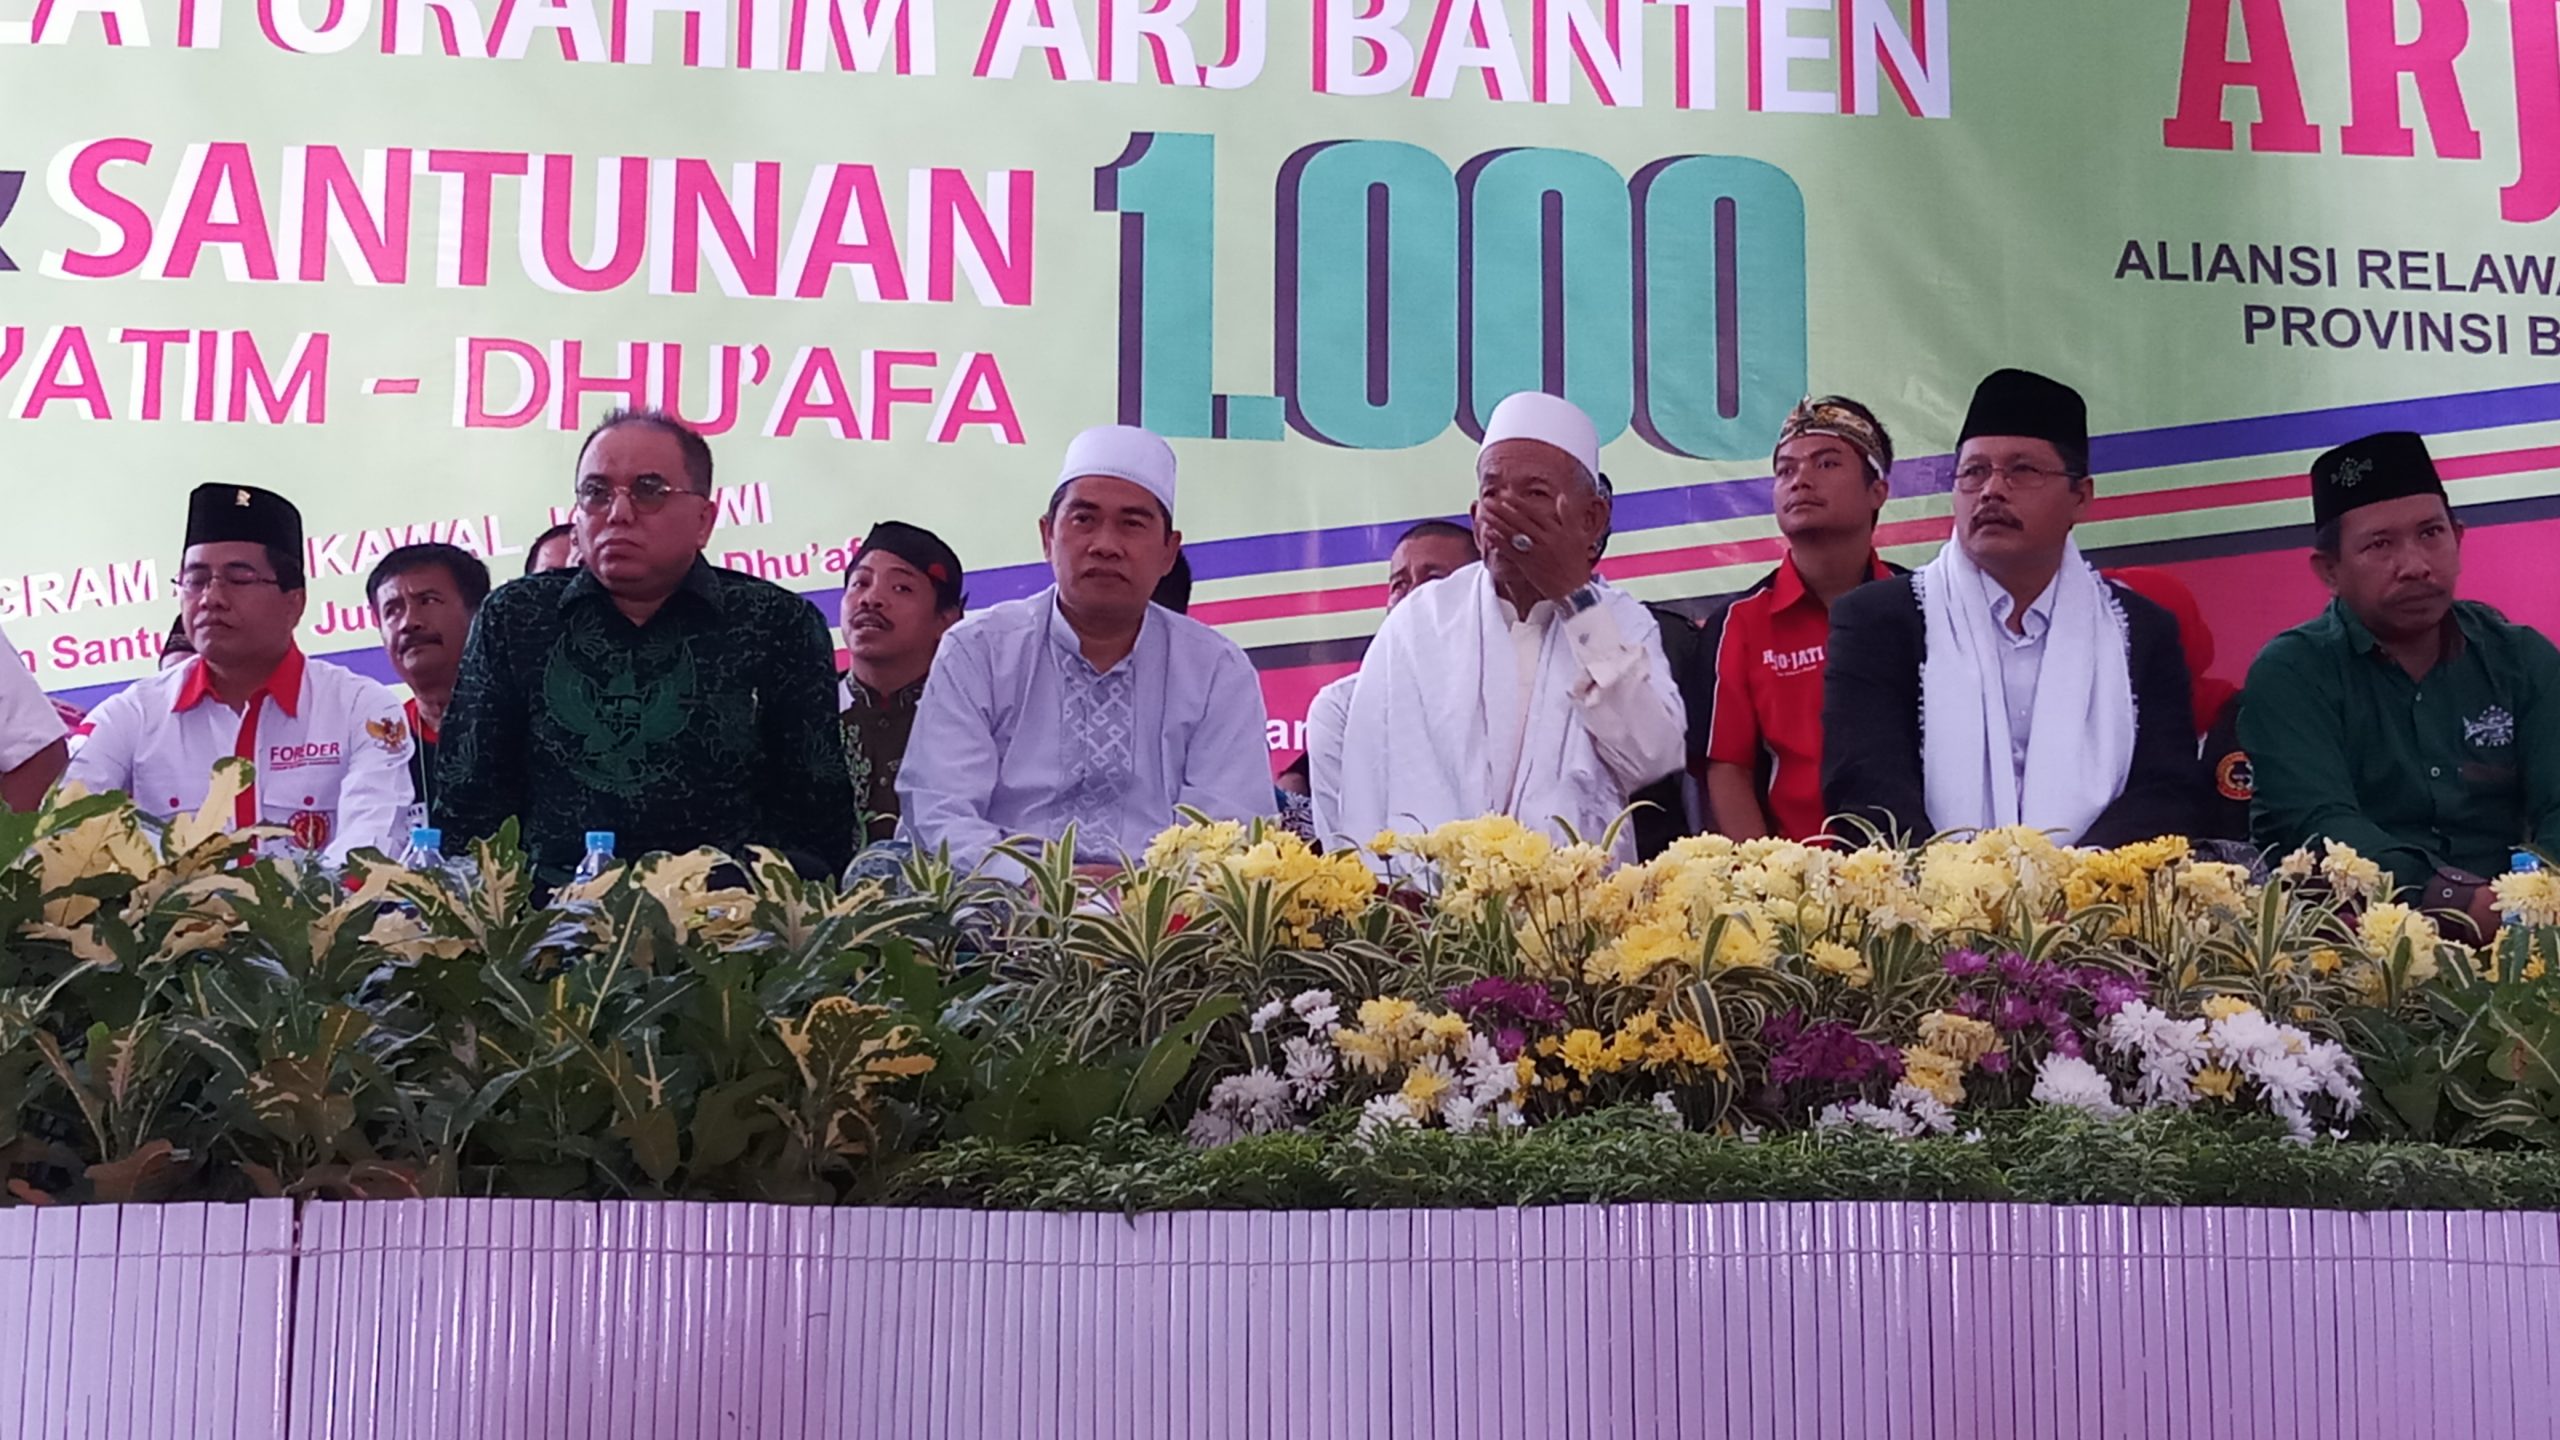 Haidar Alwi bersama pengurus Aliansi Relawan Jokowi (ARJ) dan sejumlah tokoh PWNU Provinsi Banten saat acara santunan seribu anak yatim dan dhuafa di halaman PWNU Provinsi Banten, di Kota Serang, Minggu (28/7/2019).